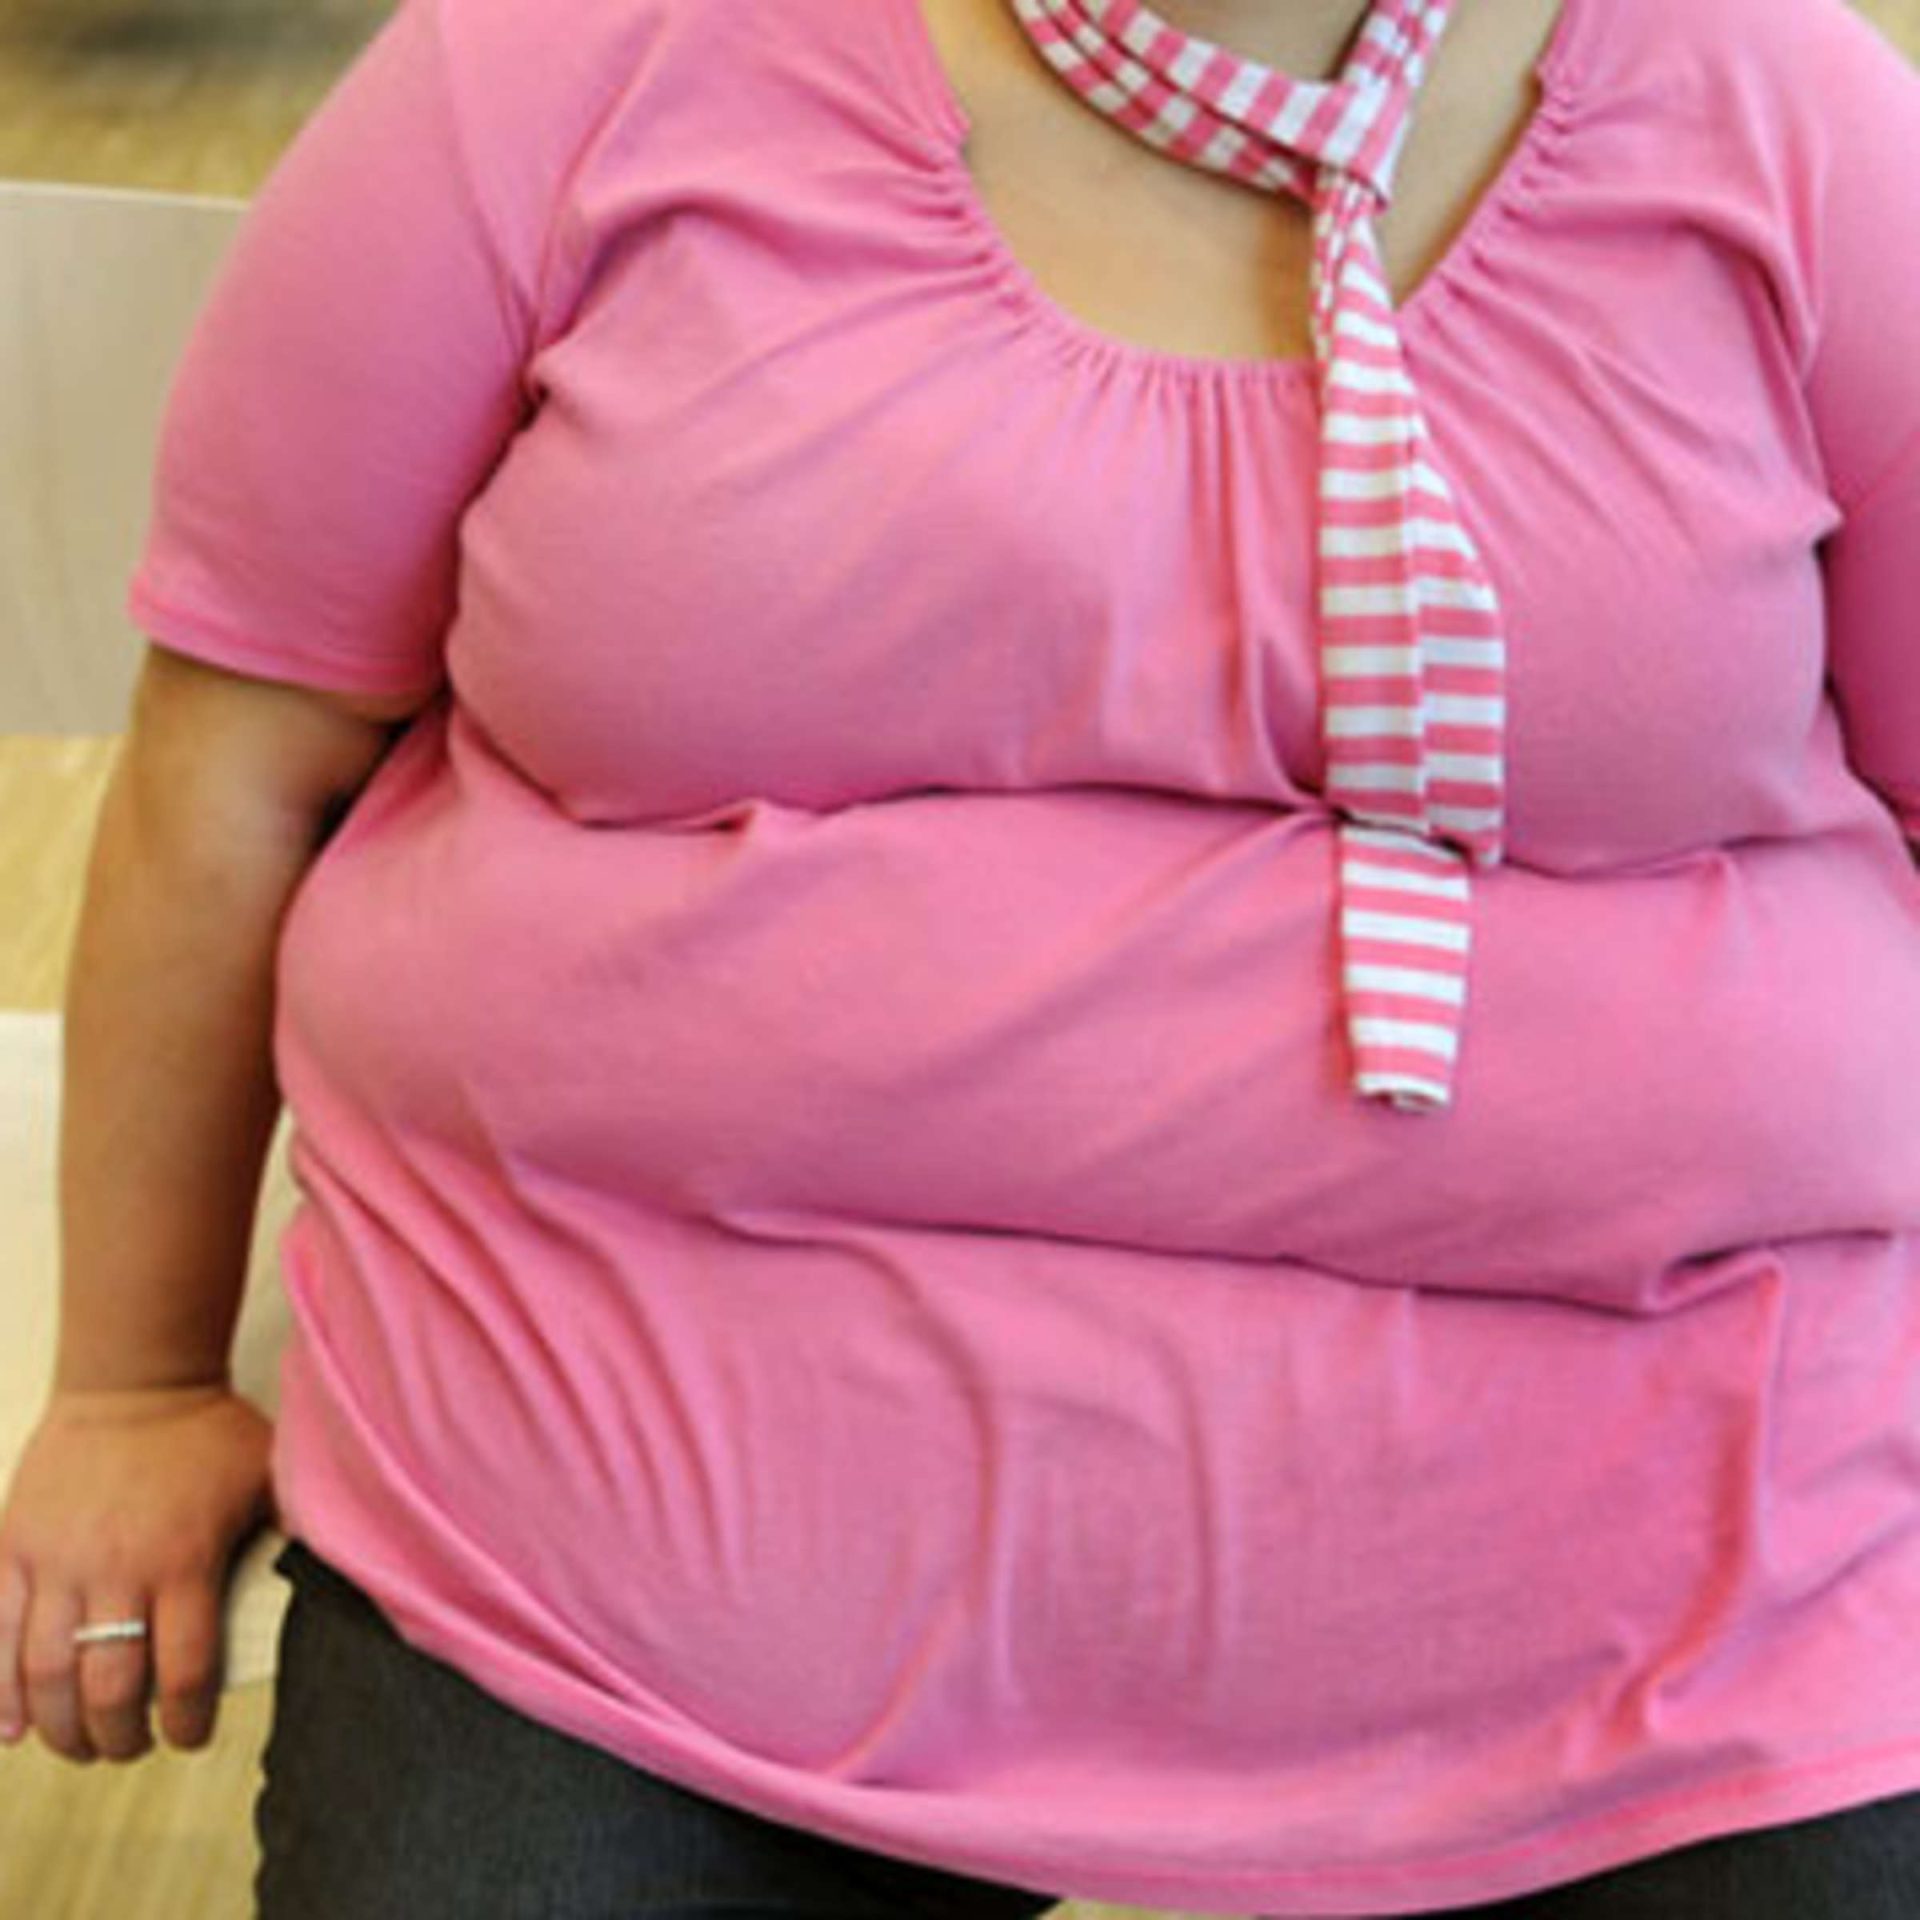 La chirurgie de perte de poids réduit le risque d'apnée mortelle